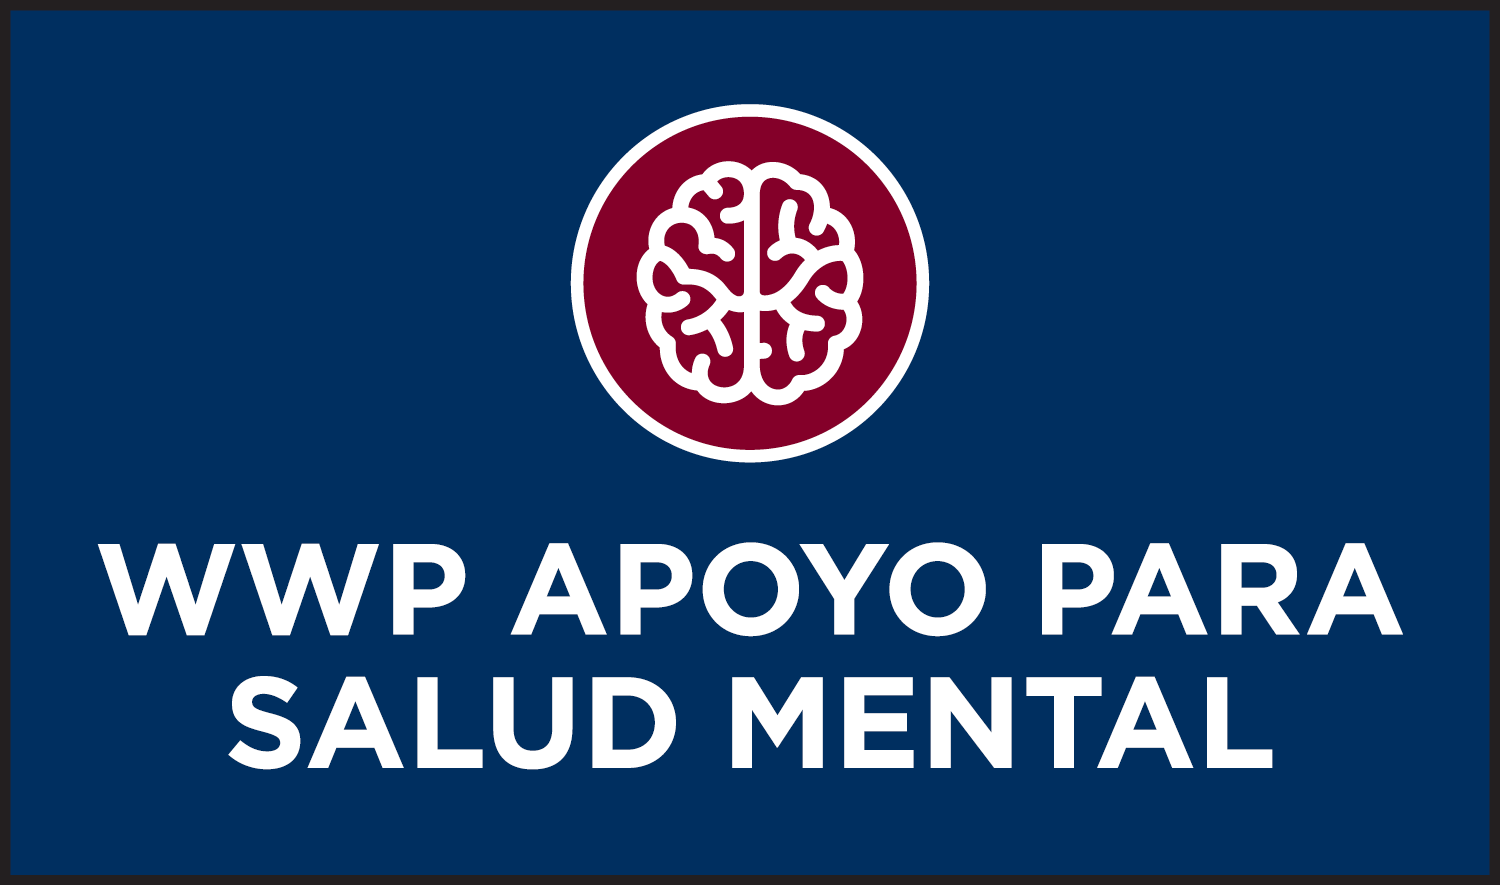 Apoyo para salud psicológica de WWP